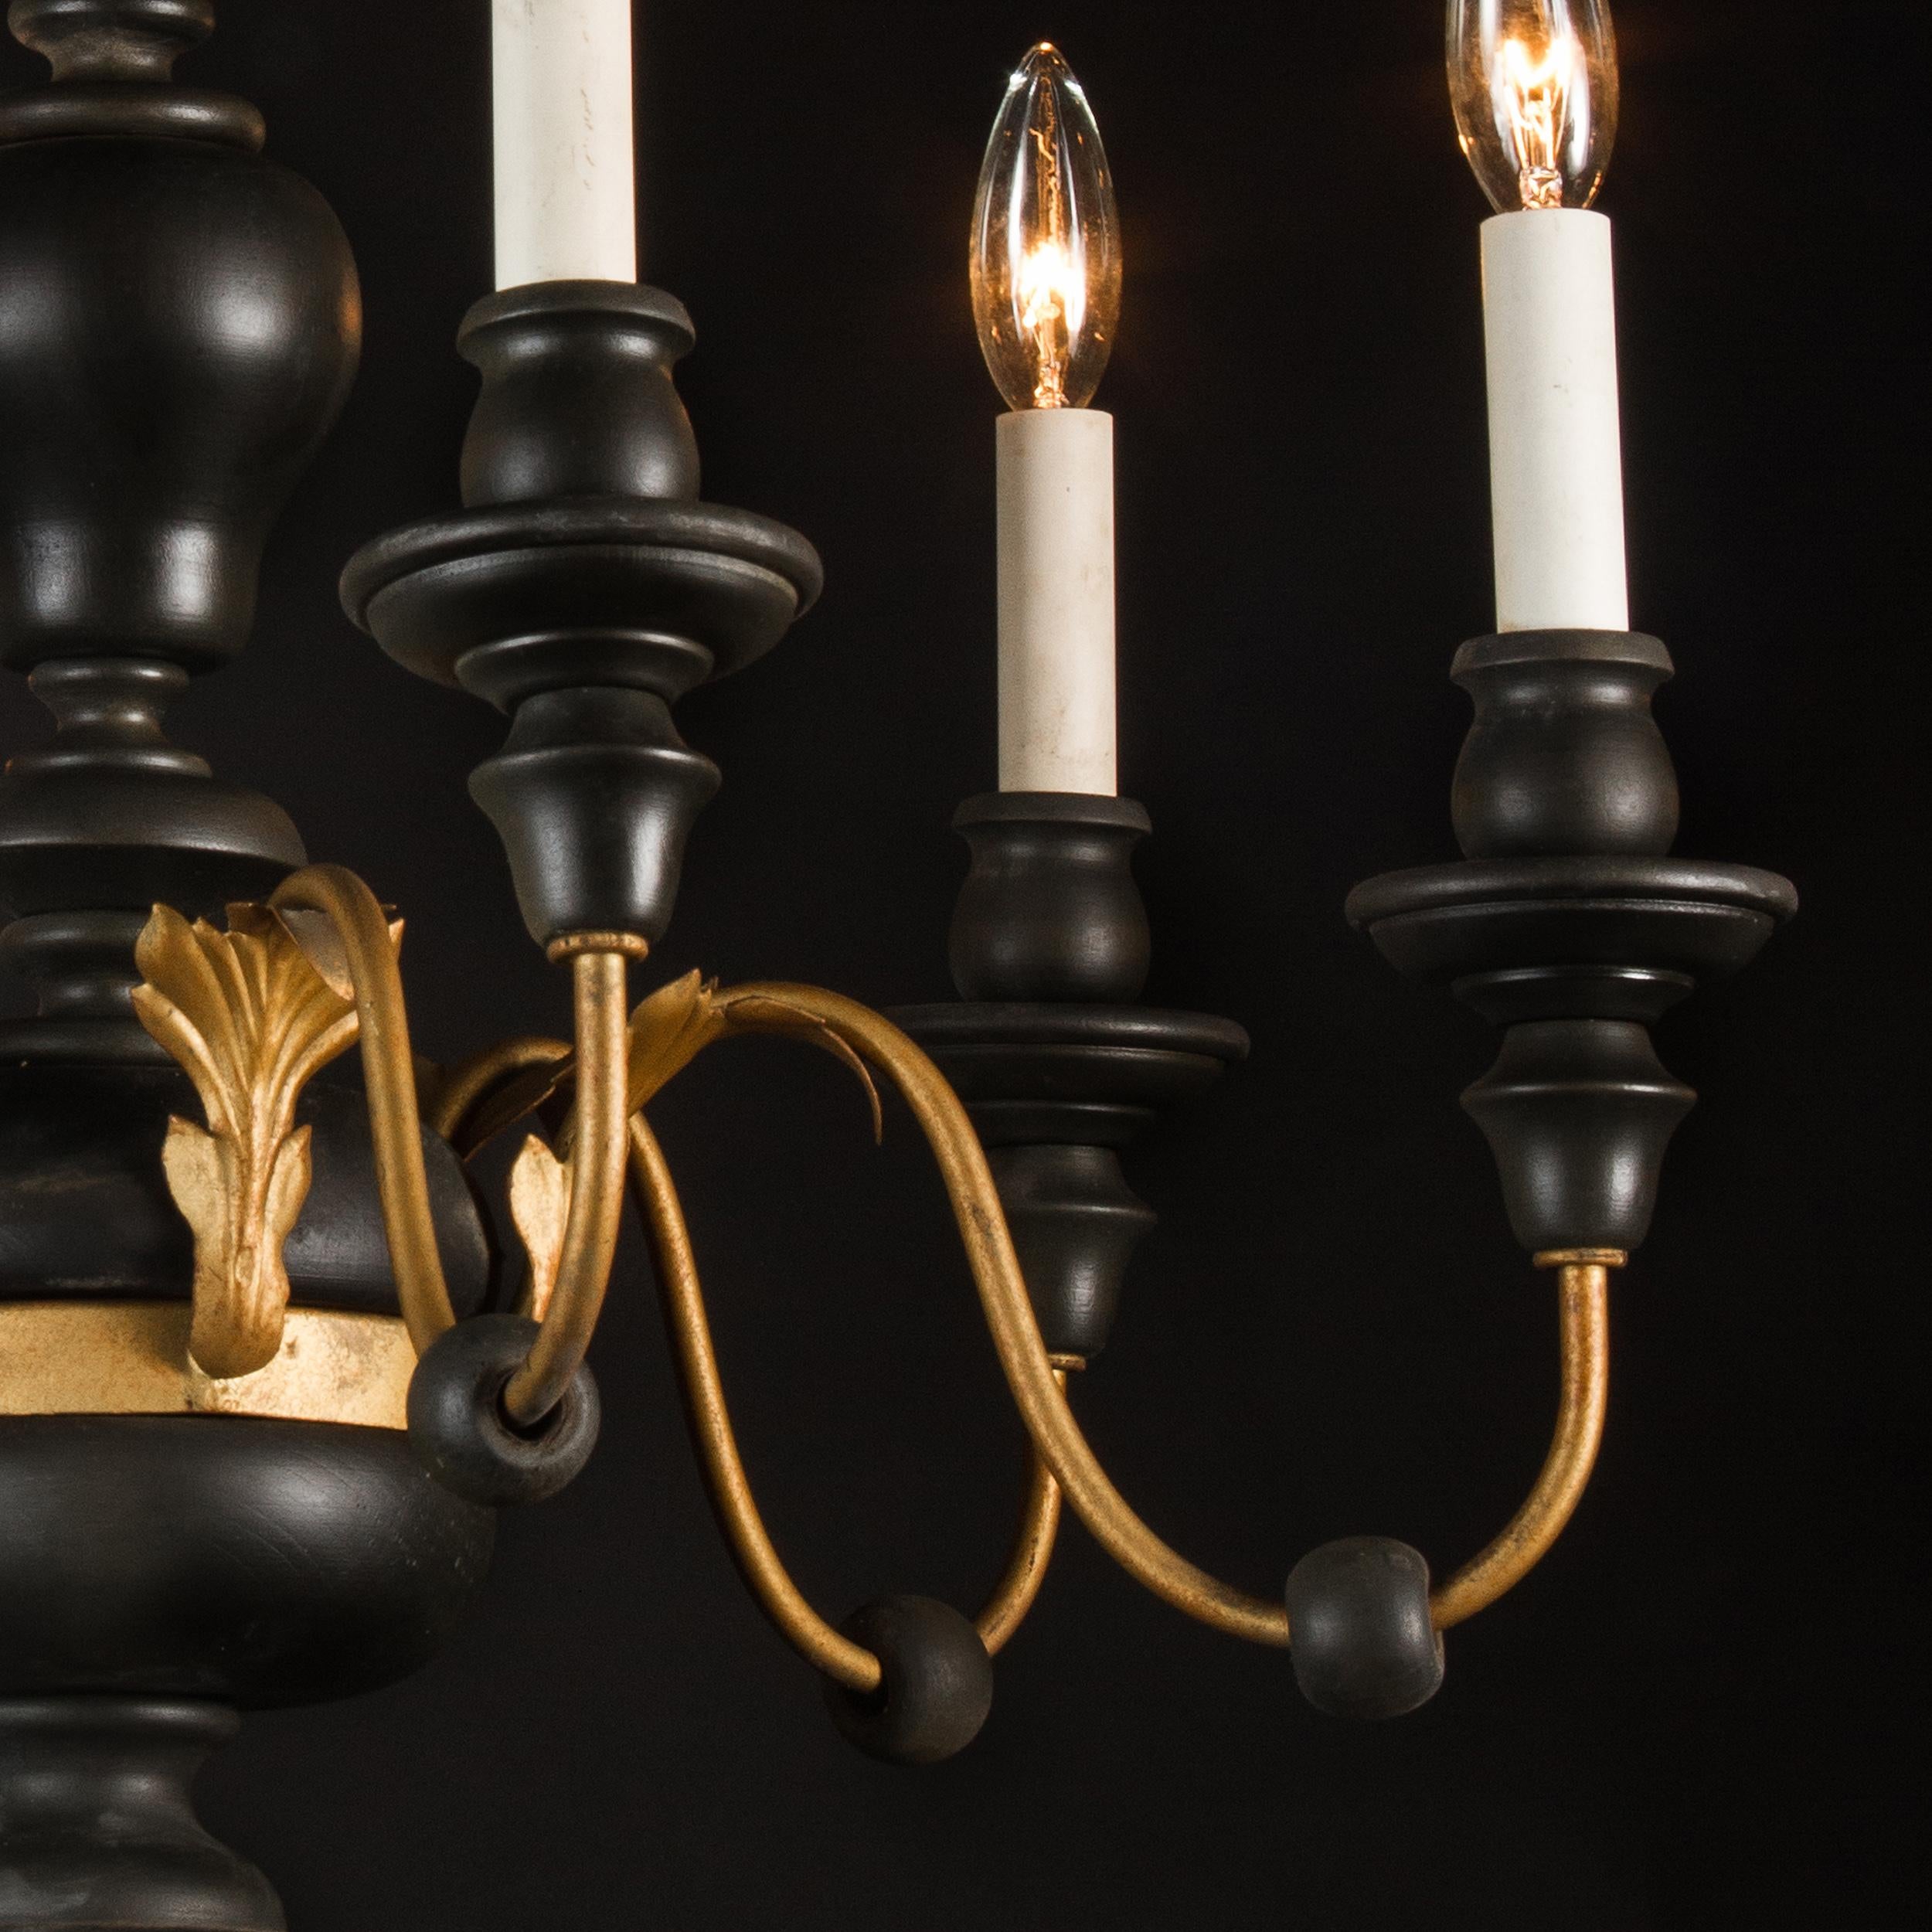 Datant du milieu du XXe siècle, ce lustre simple et élégant présente un style Louis XVI. Fabriqué principalement en bois, le luminaire comporte également des éléments décoratifs en fer et en métal au sommet et à la base des bras.

Chaque pièce de